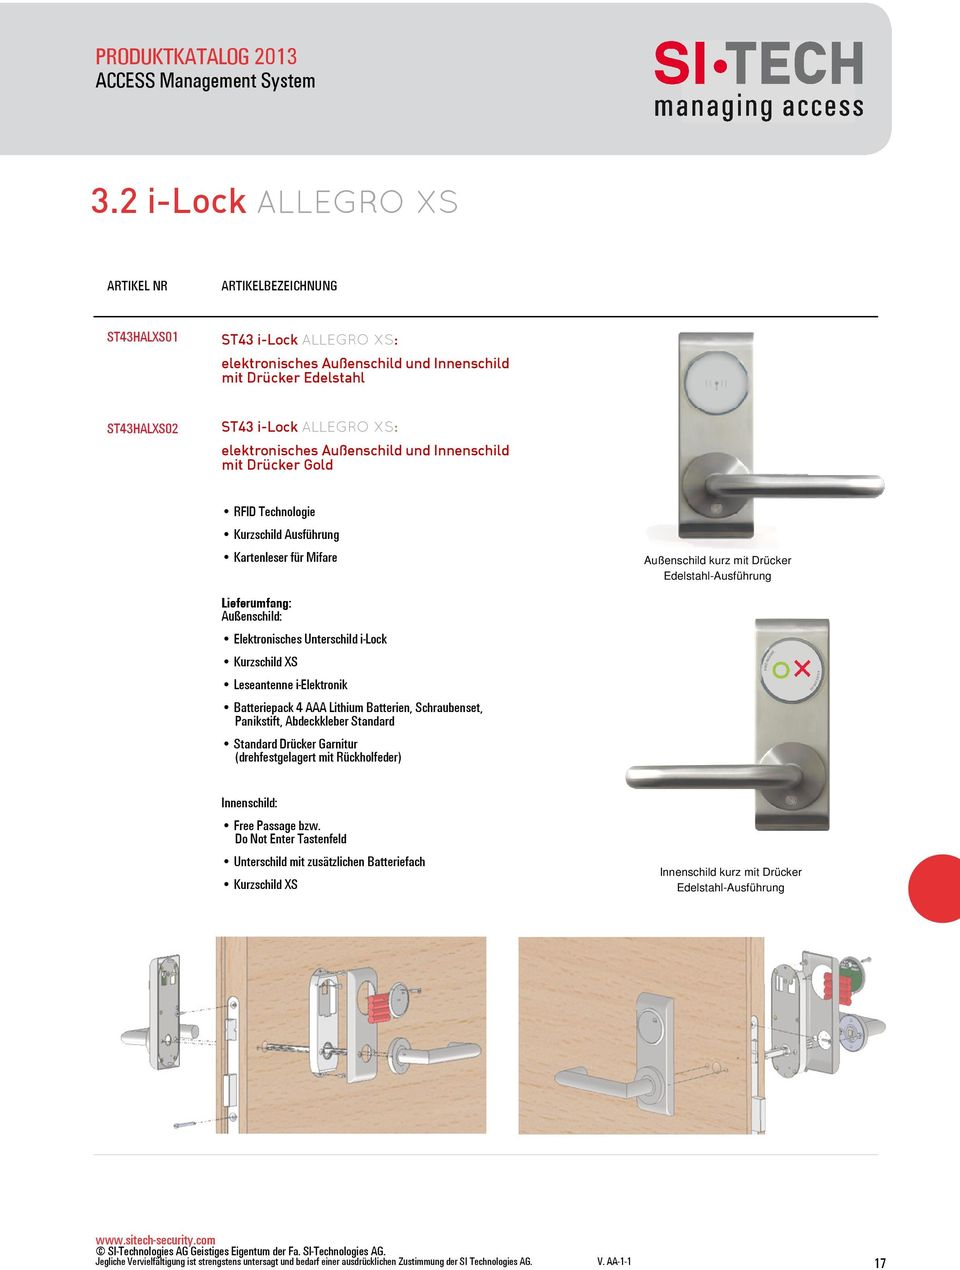 i-lock Kurzschild XS Leseantenne i-elektronik Batteriepack 4 AAA Lithium Batterien, Schraubenset, Panikstift, Abdeckkleber Standard Standard Drücker Garnitur (drehfestgelagert mit Rückholfeder)